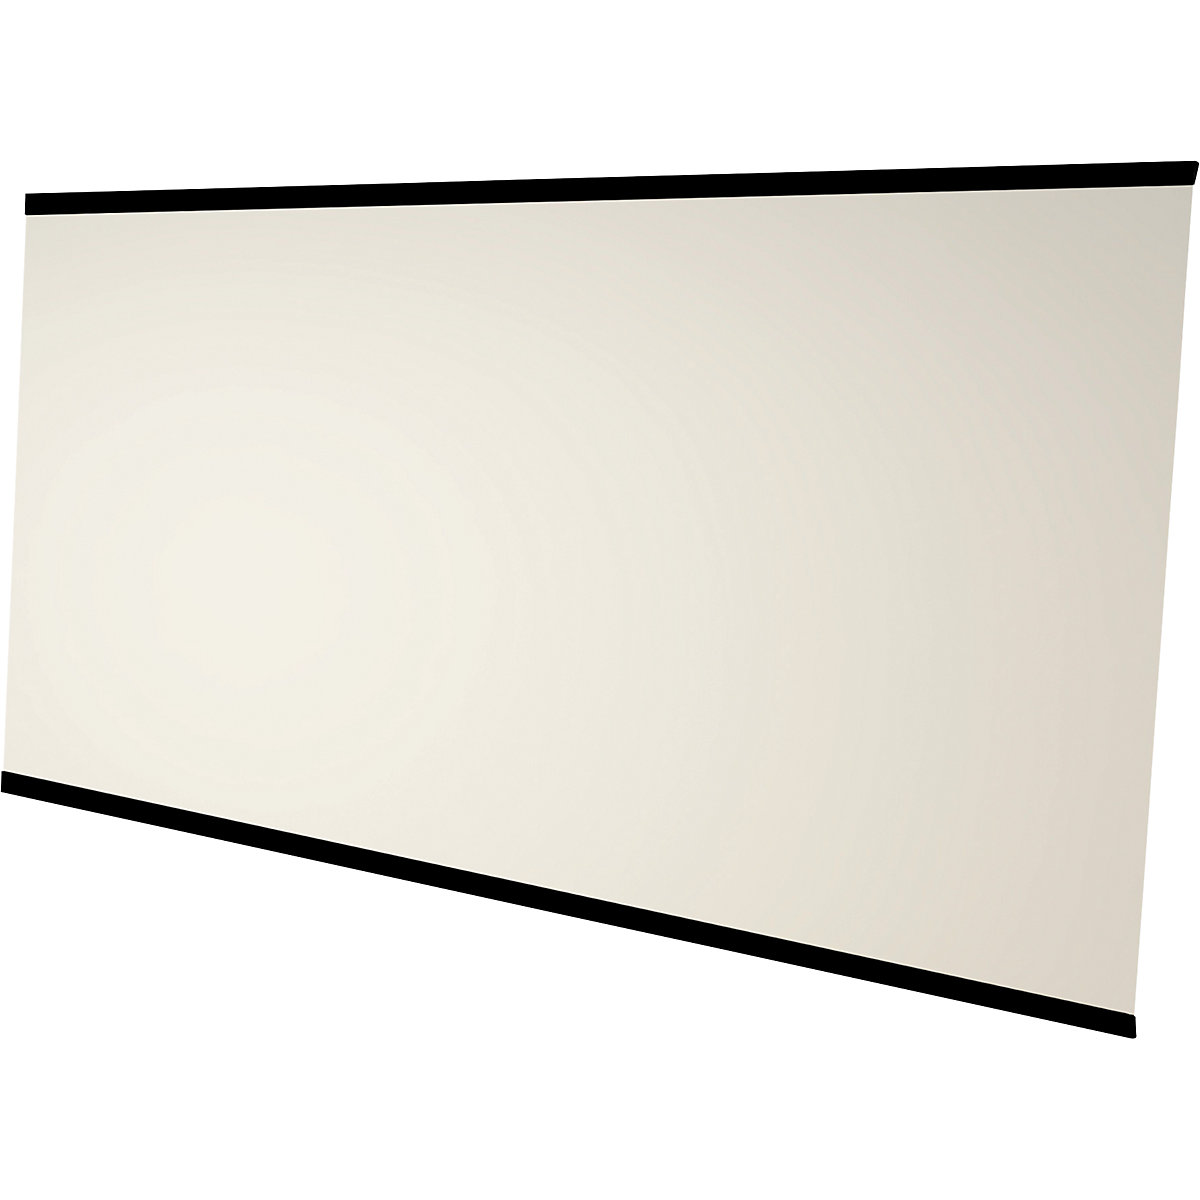 Quadro branco LEAN WALL, sem caixilho – Chameleon, esmaltado, branco, LxA 3920 x 2216 mm, 4 painéis-8